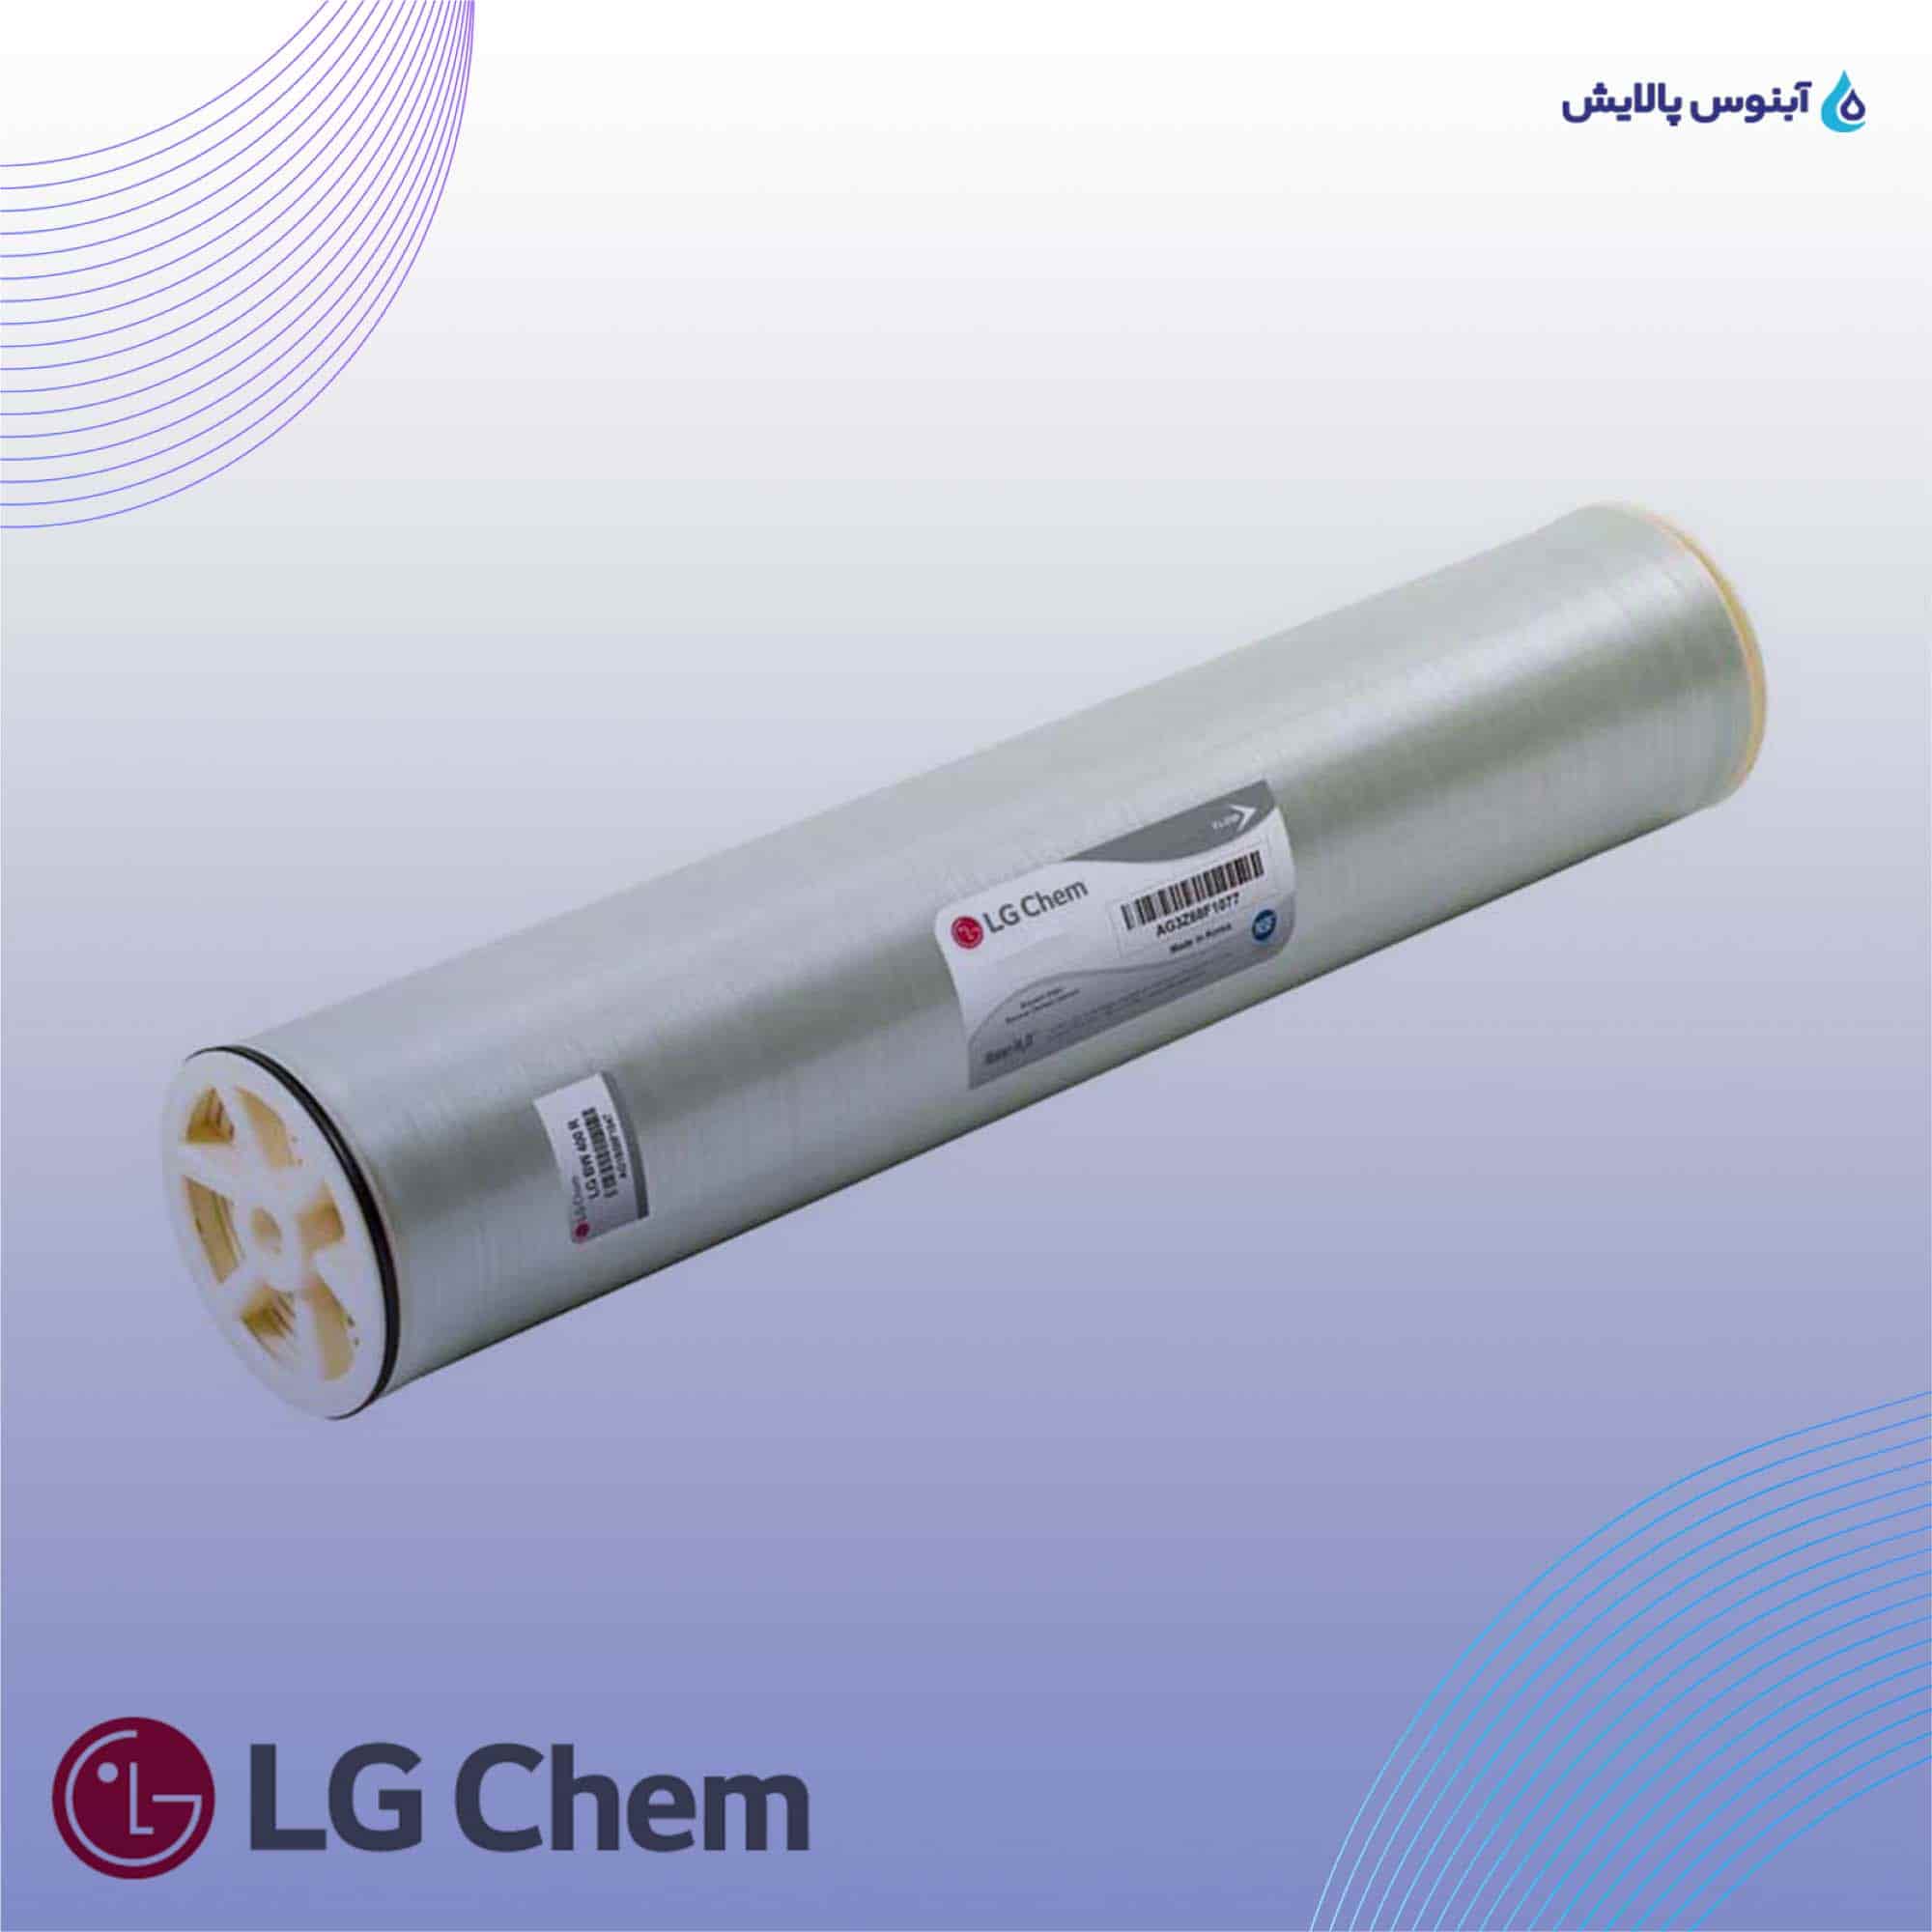 ممبران 8 اینچ ال جی کم (LG Chem) مدل LG BW 440 ES